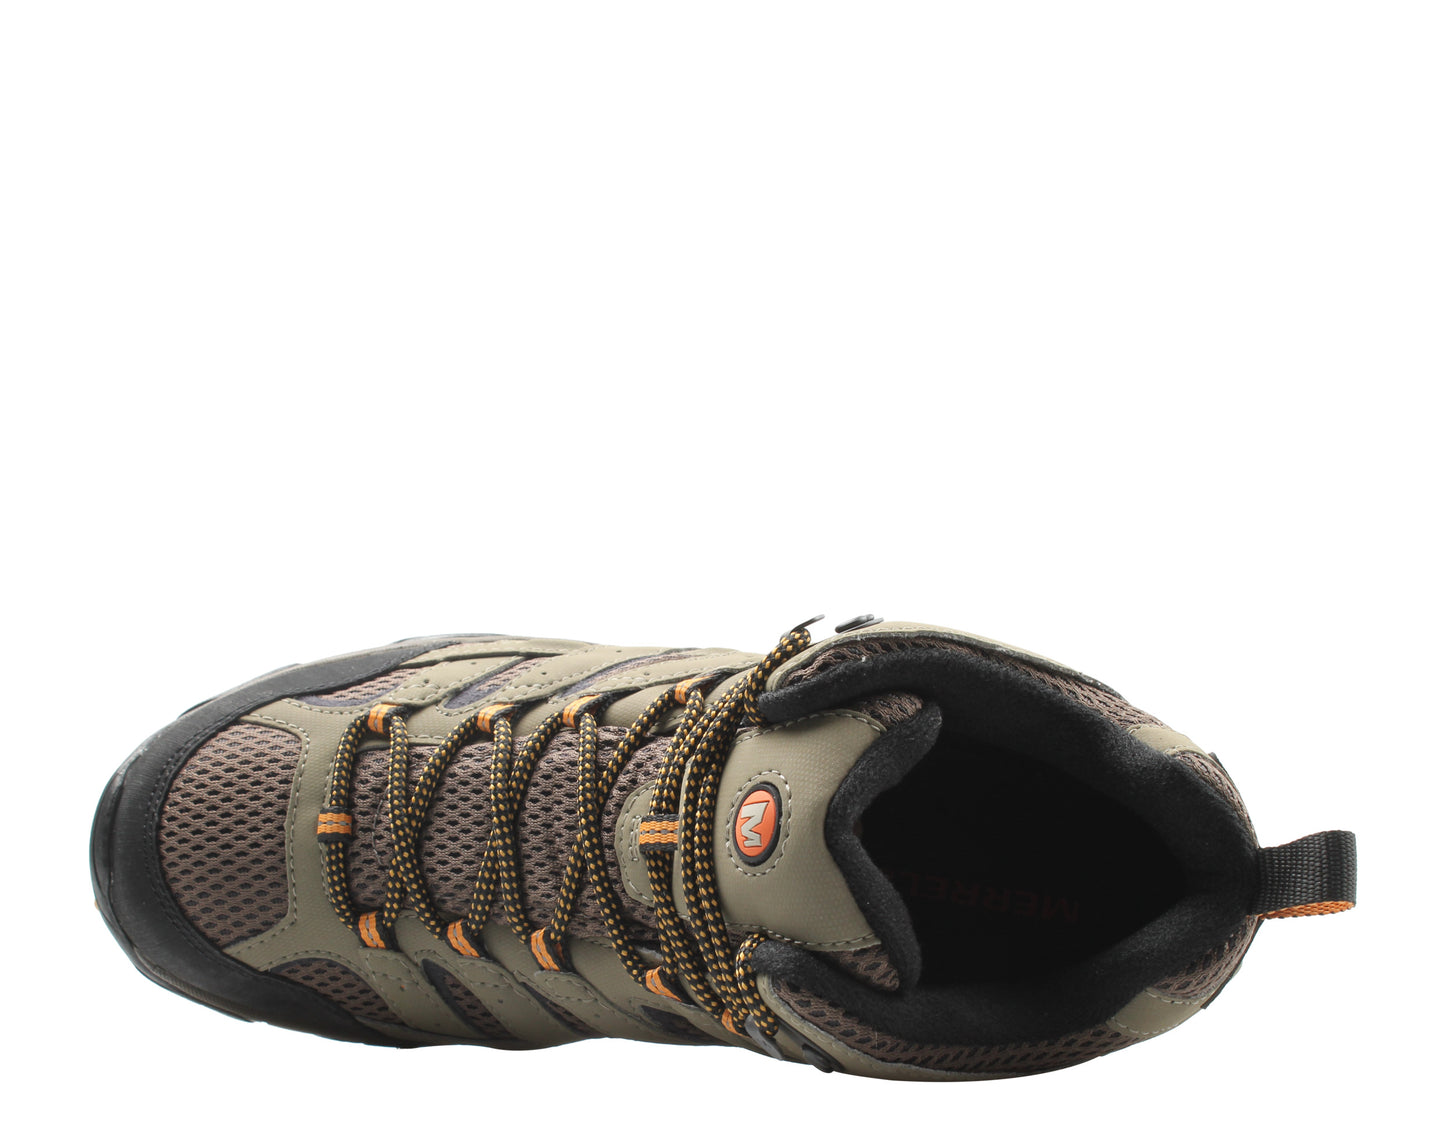 Merrell Moab 2 Mid GORE-TEX Walnut Men's Hiking Boots J06057